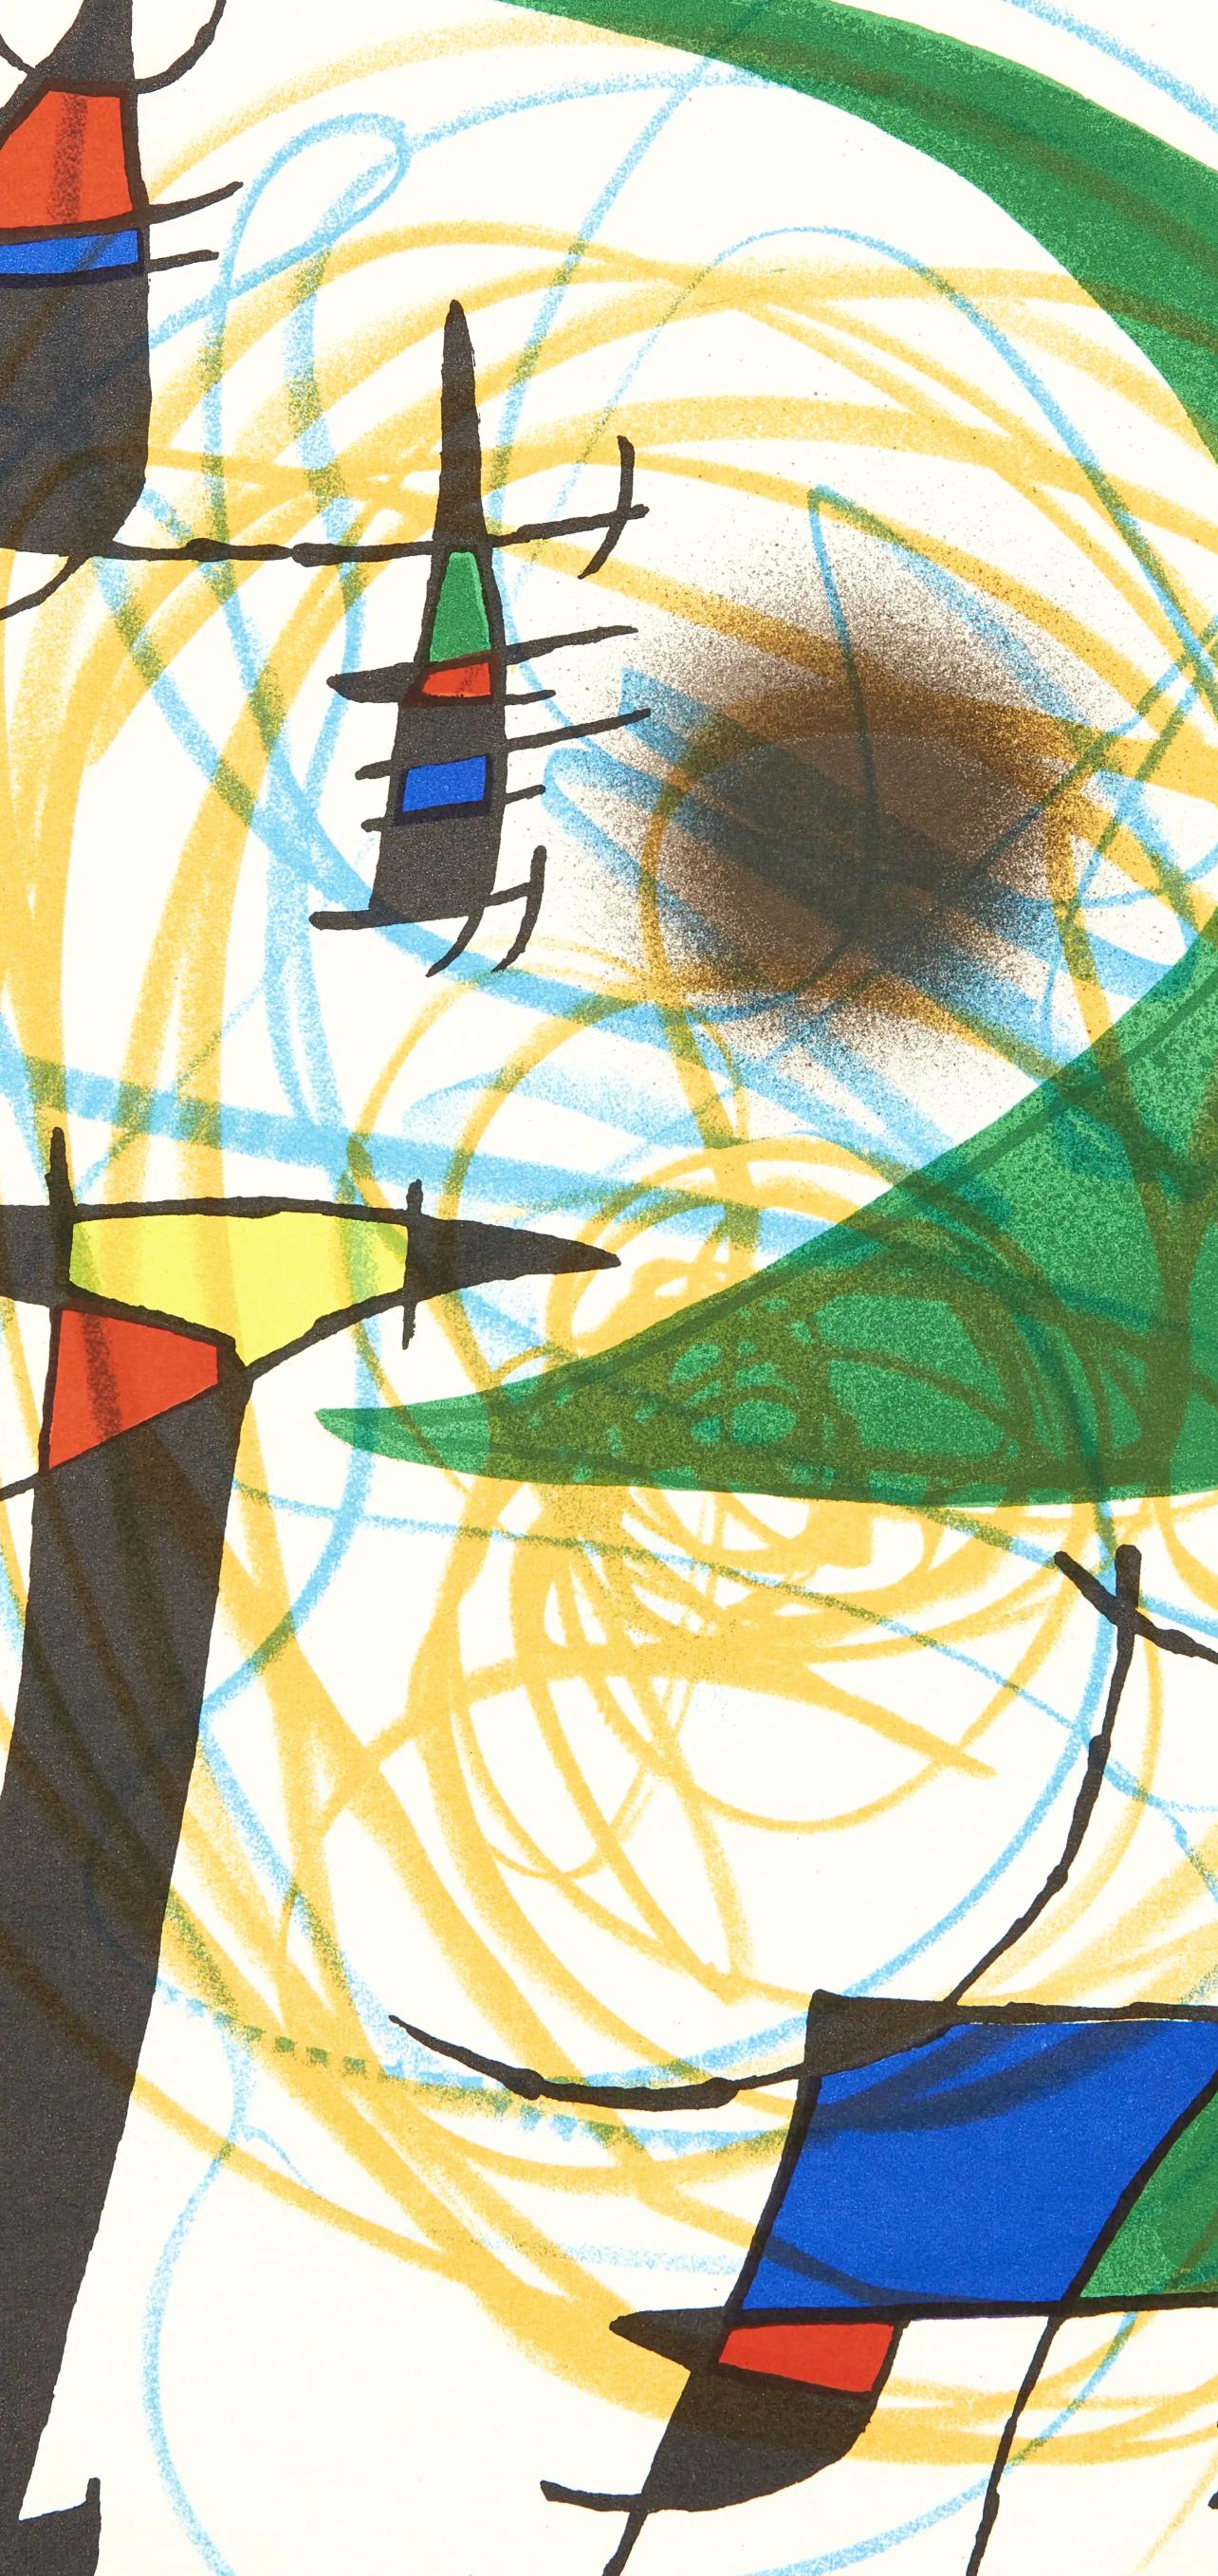 Miró, Litógrafia original V (Cramer 160; Mourlot 861), Litógrafo I (after) - Surrealist Print by Joan Miró